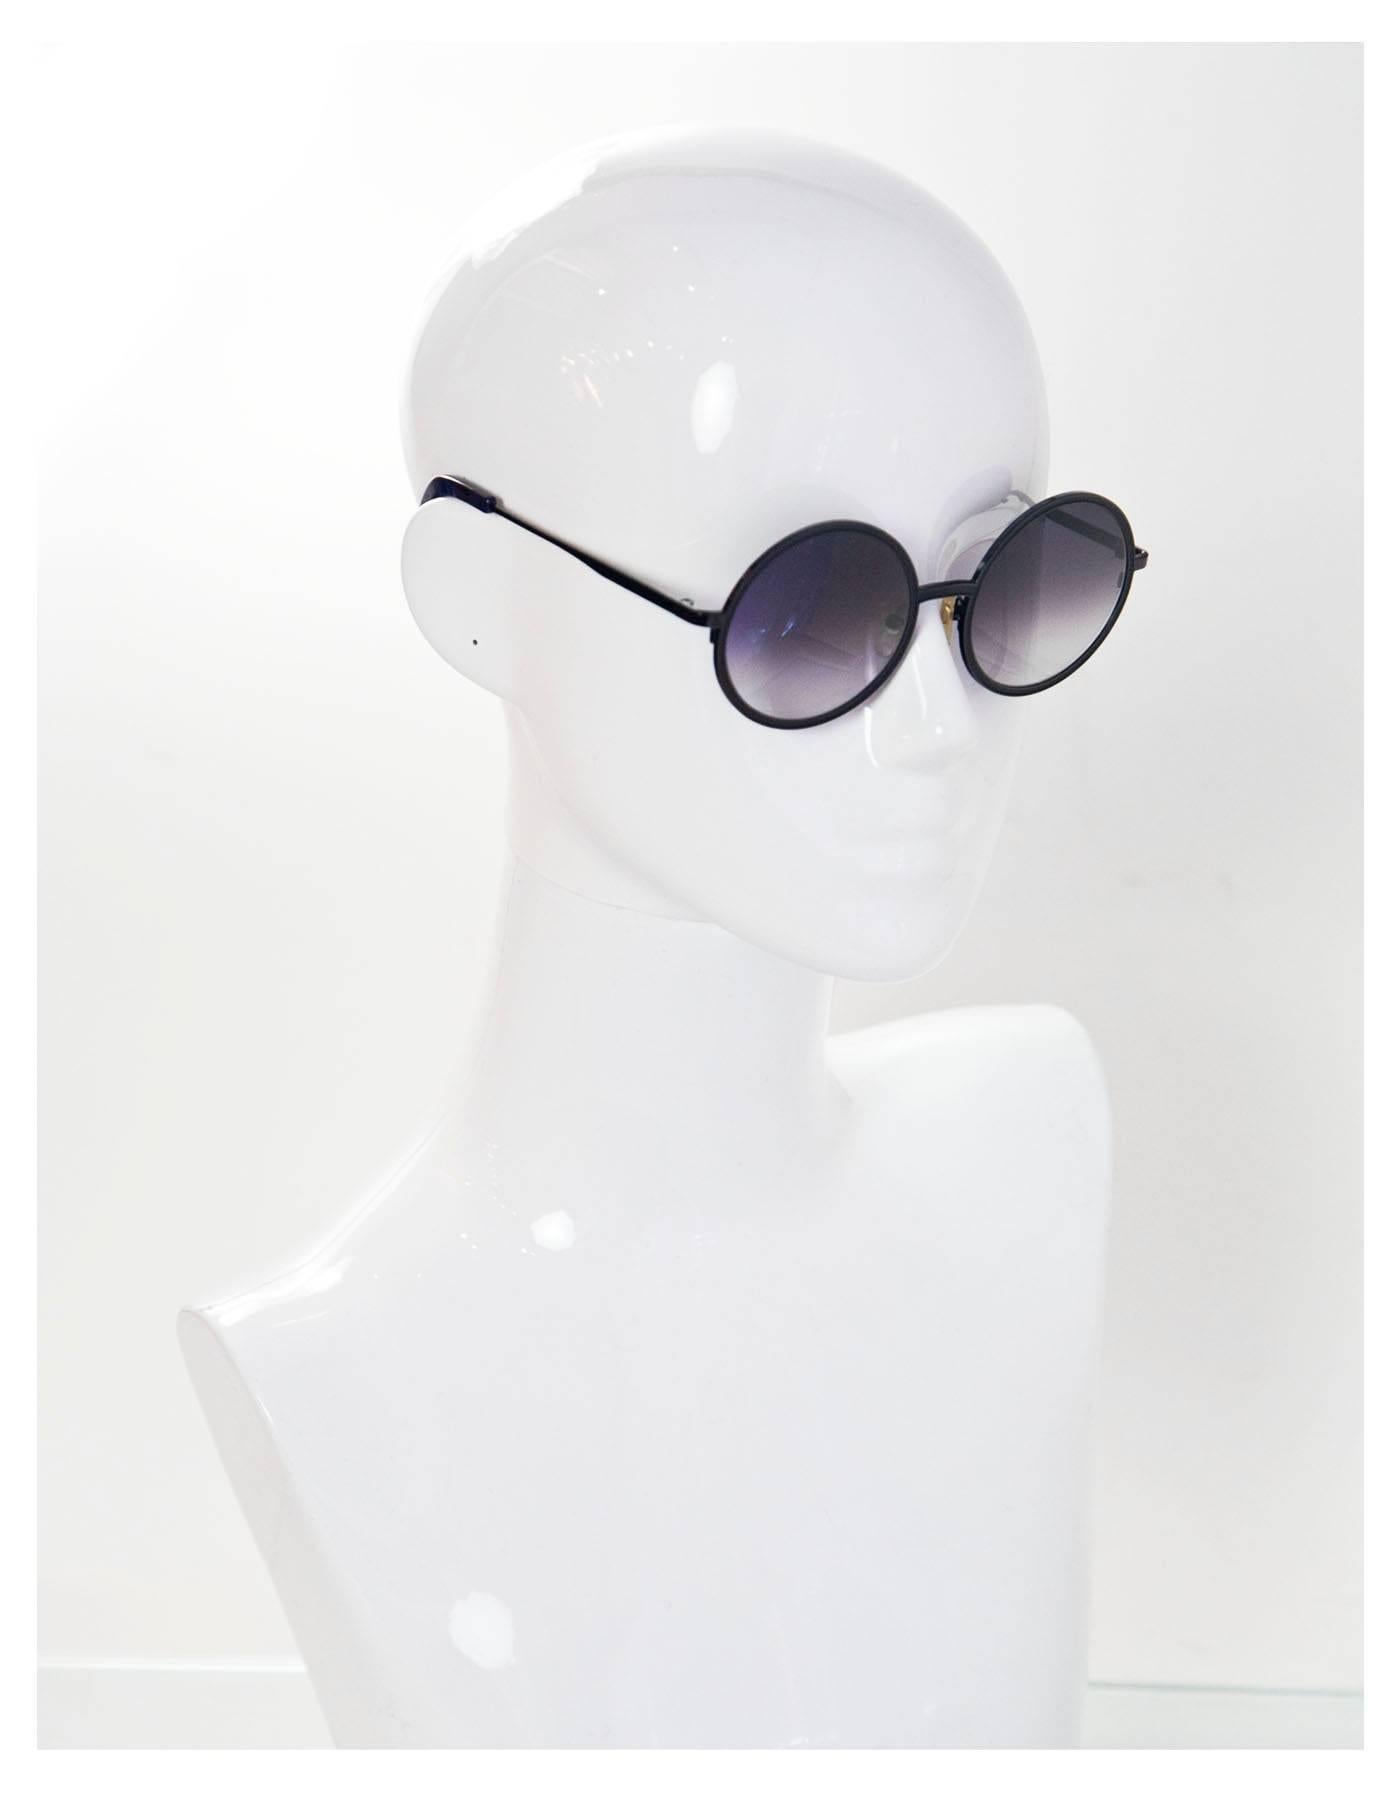 Sunday Somewhere NEW Black Round Charlie Sunglasses rt. $290 4